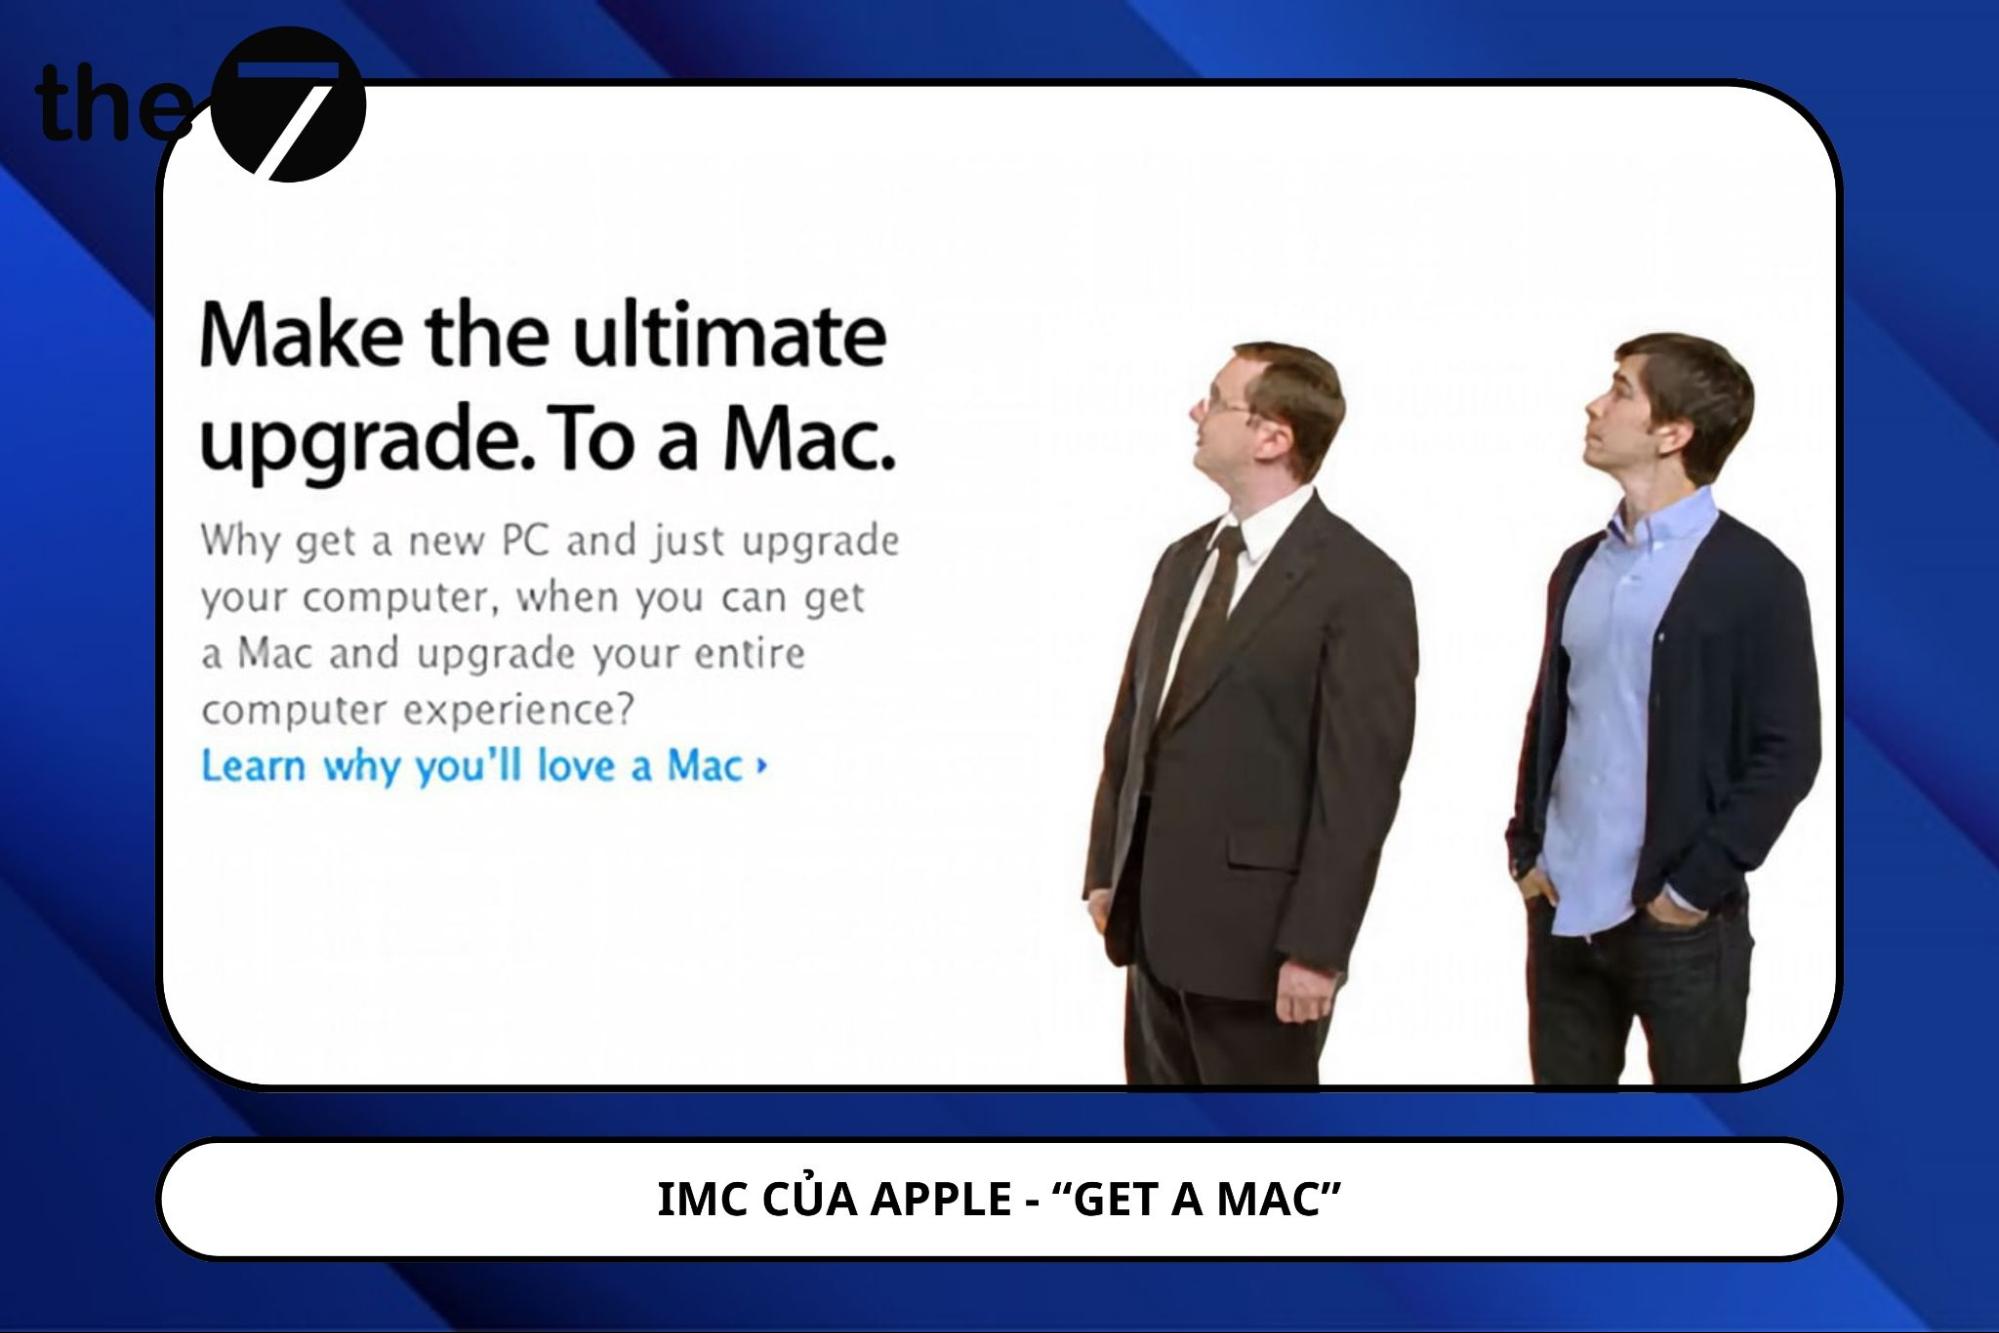 Chiến dịch IMC của Apple - “GET A MAC”